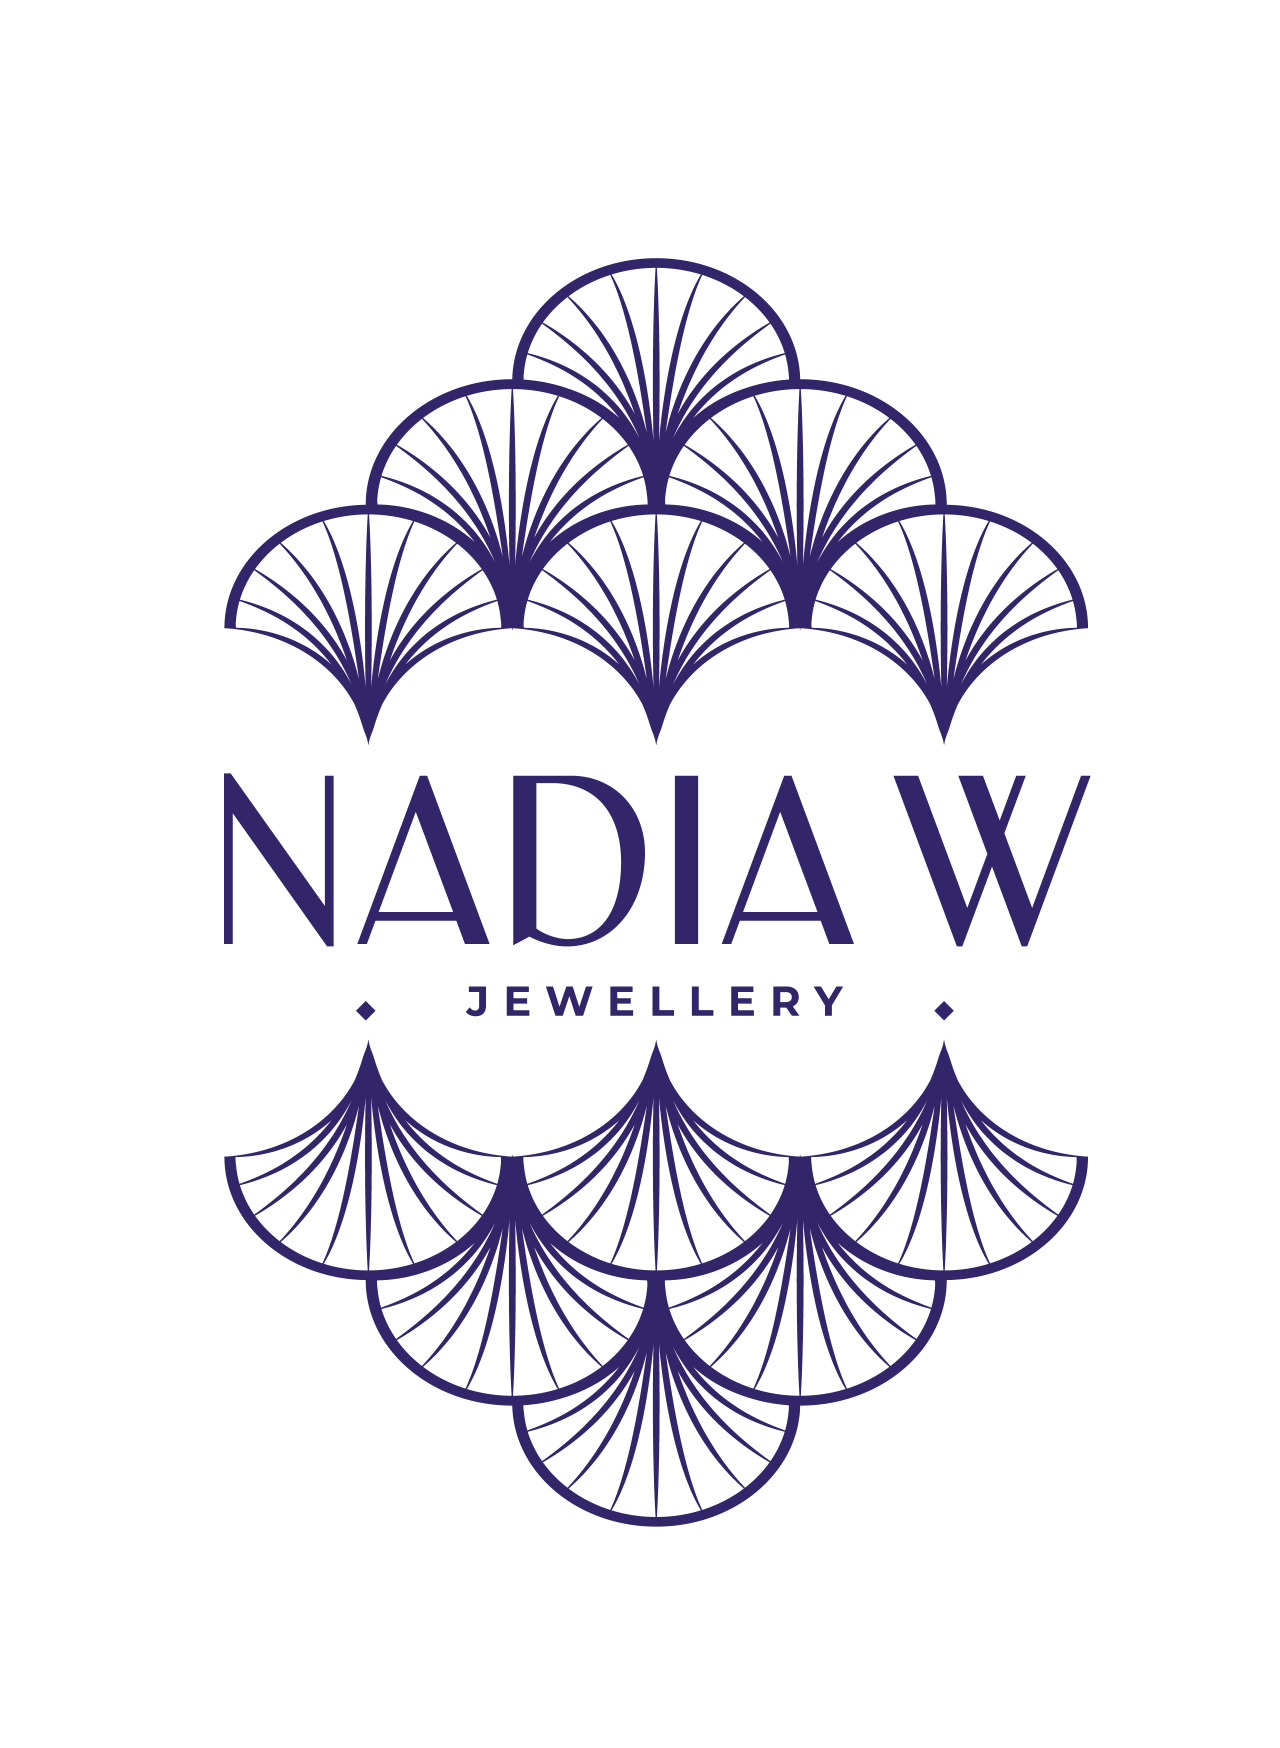 Nadia W Jewellery Logo with fan shapes in dark purple colour